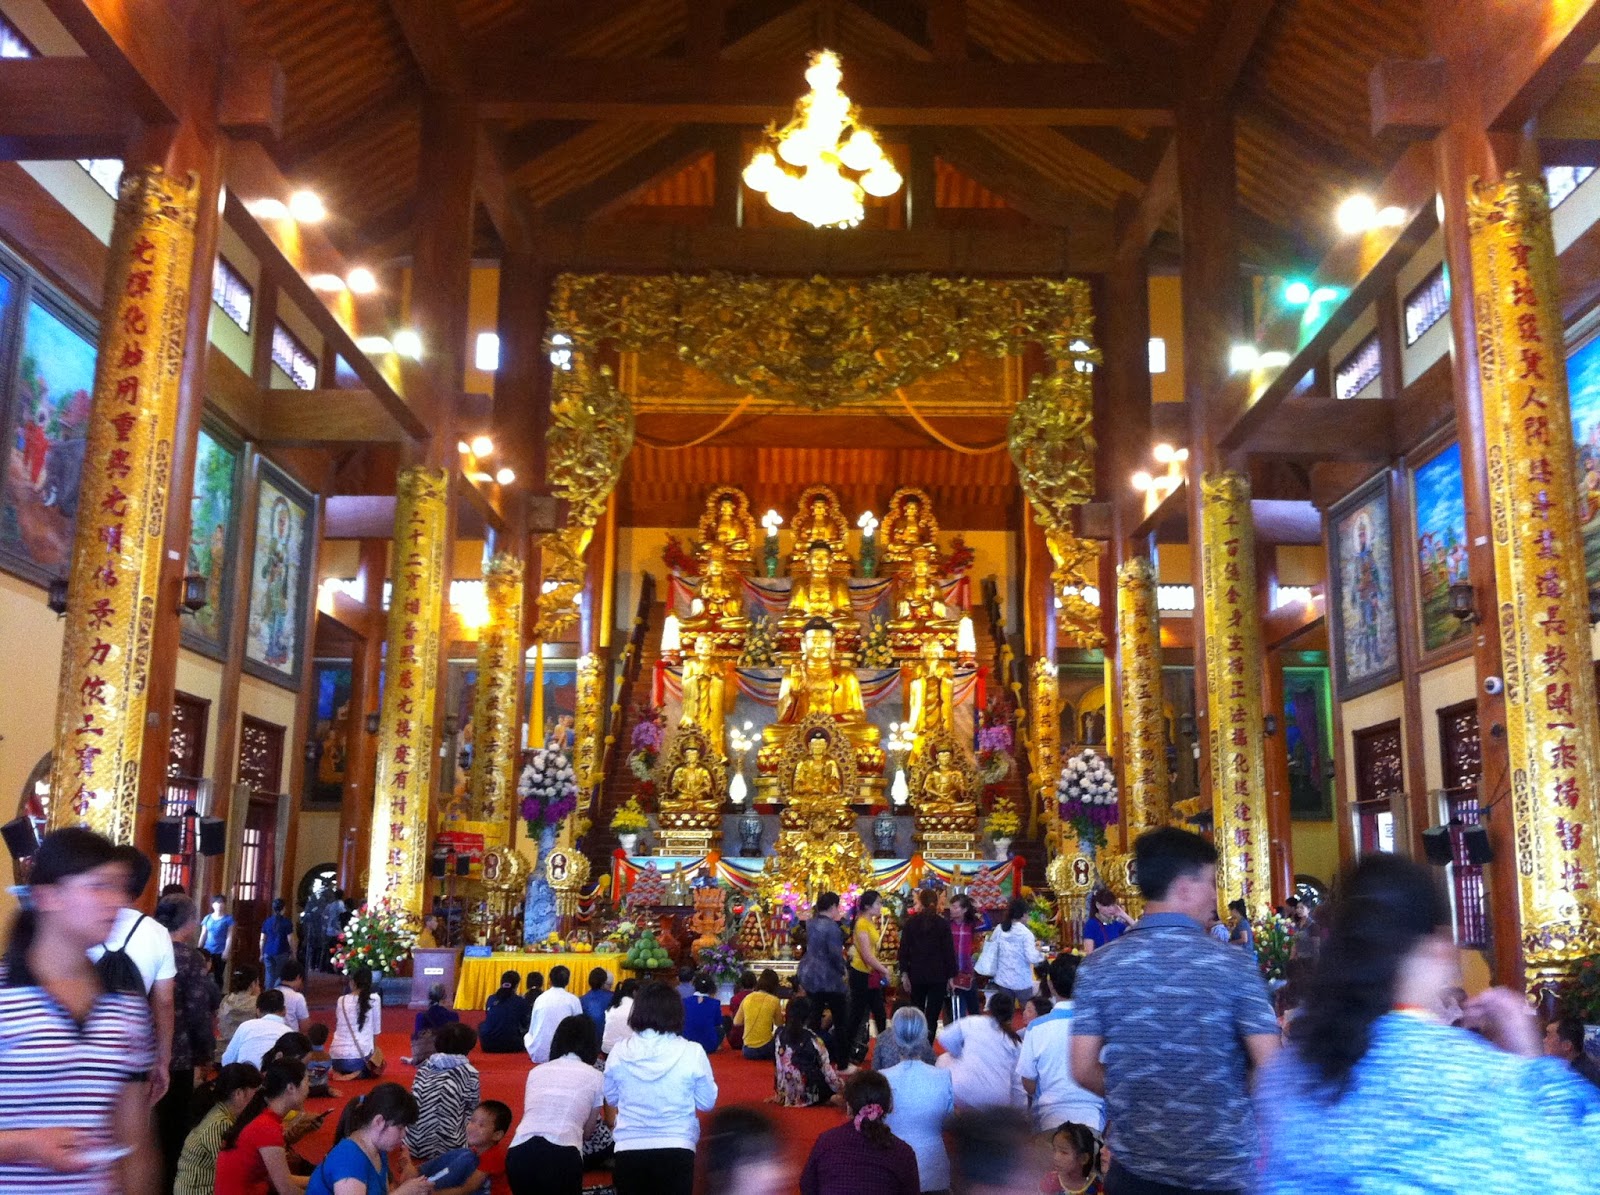 Vấn nạn mê tín trong chùa chiền đang hủy hoại hình ảnh của đạo Phật